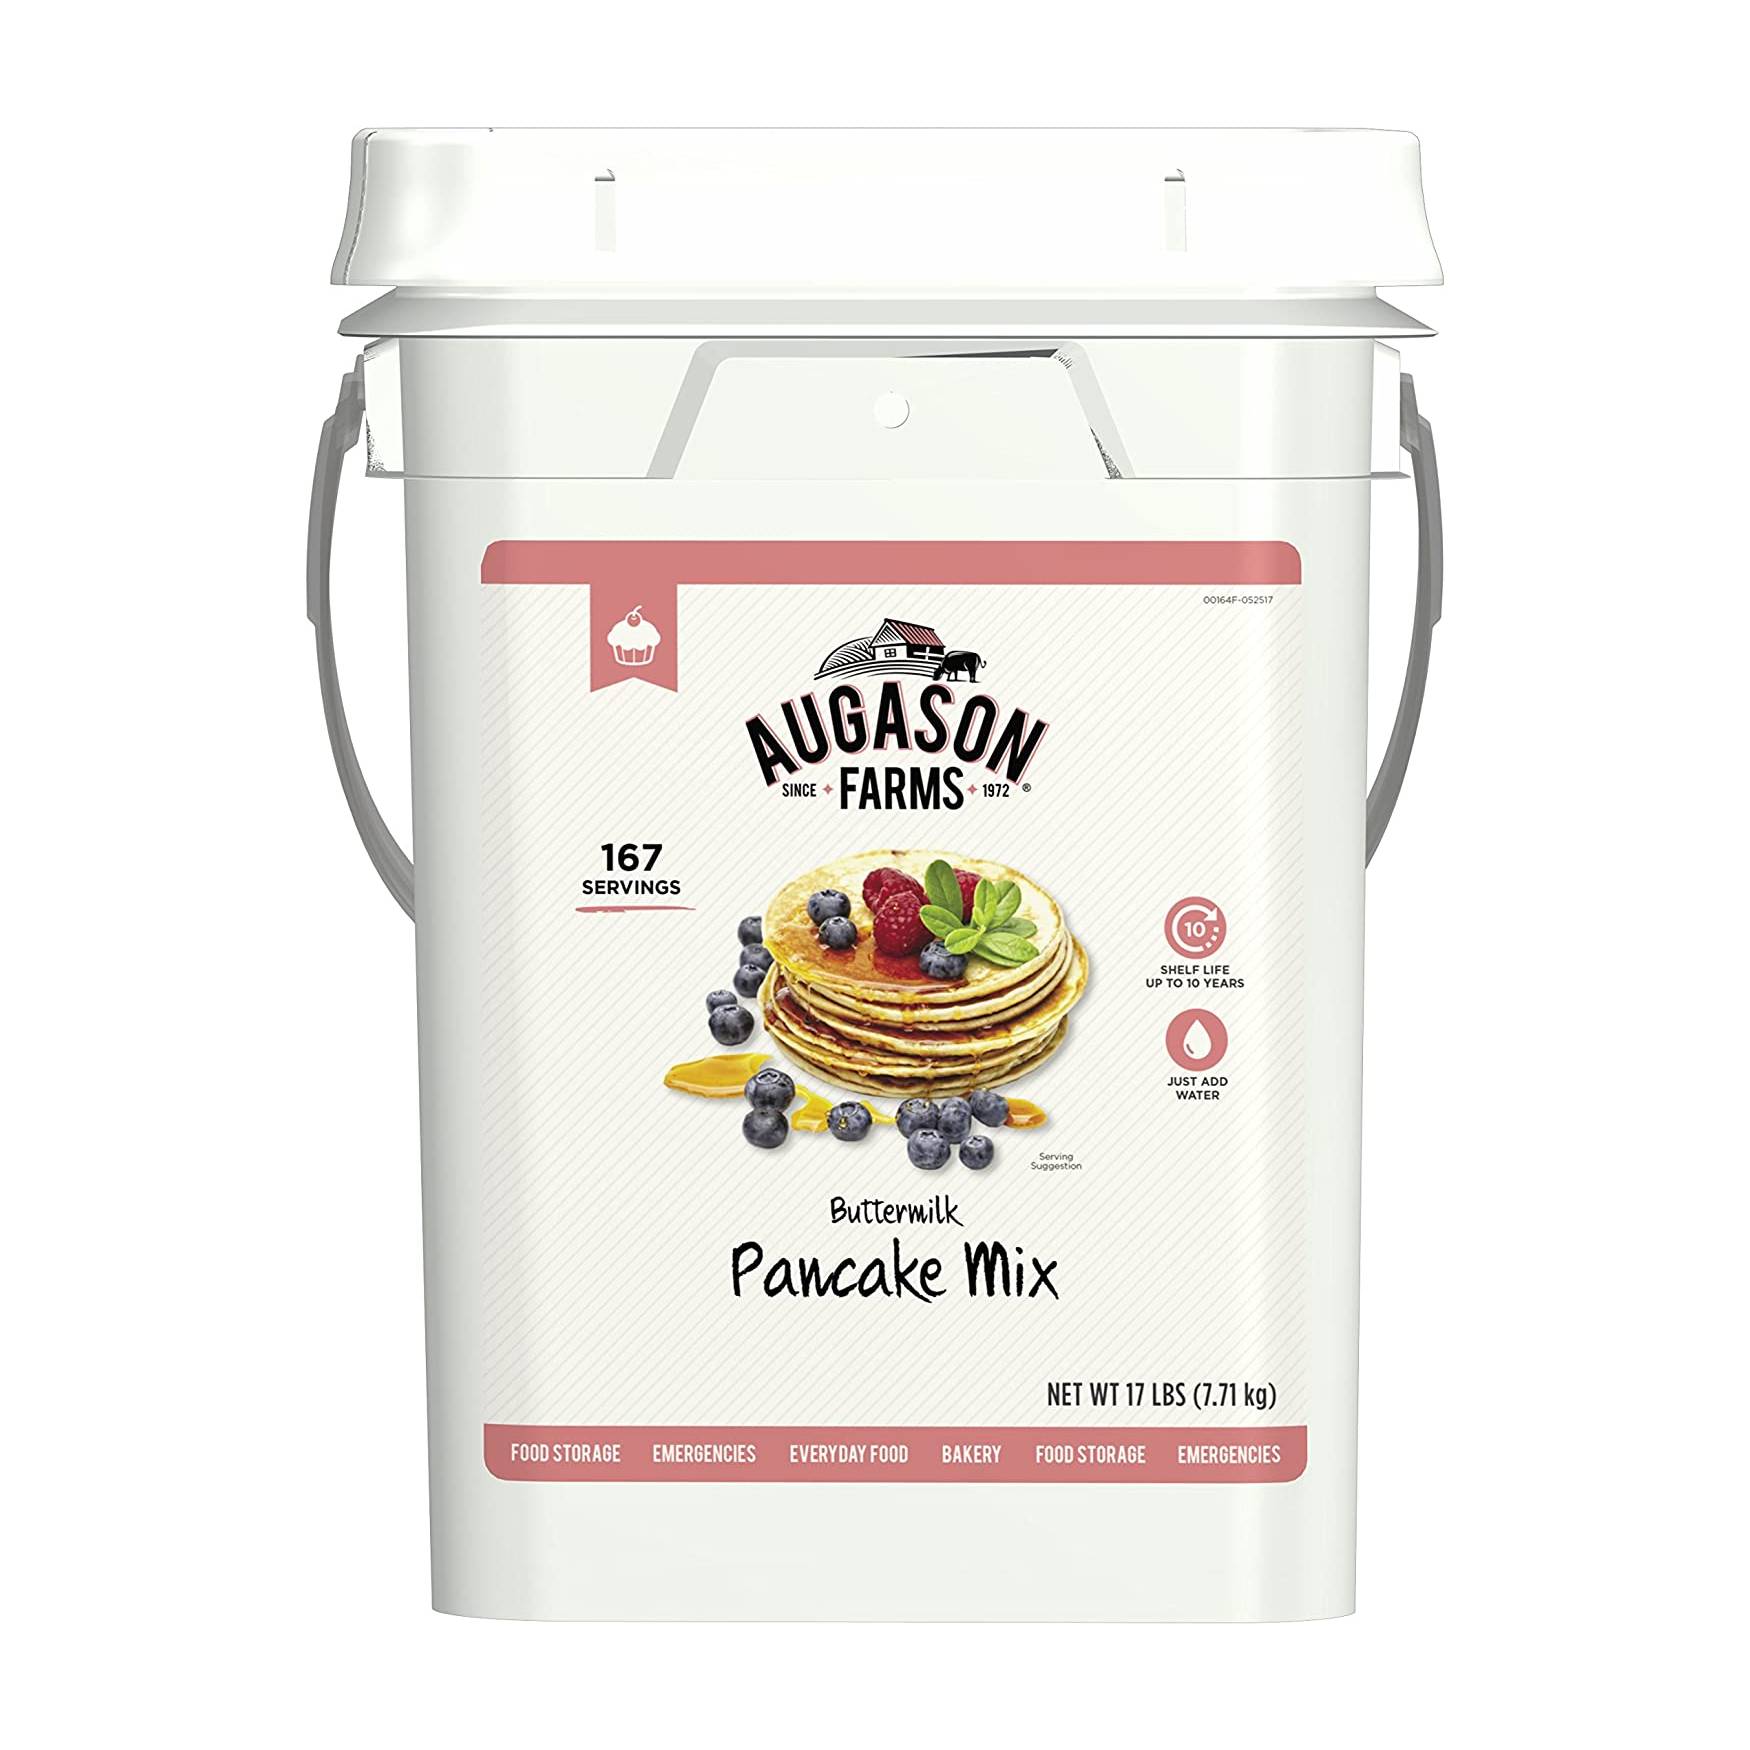 Augason Farms Buttermilk Pancake Mix 17lb 4 Gallon Pail - 167 Servings - (SHIPS IN 1-2 WEEKS)